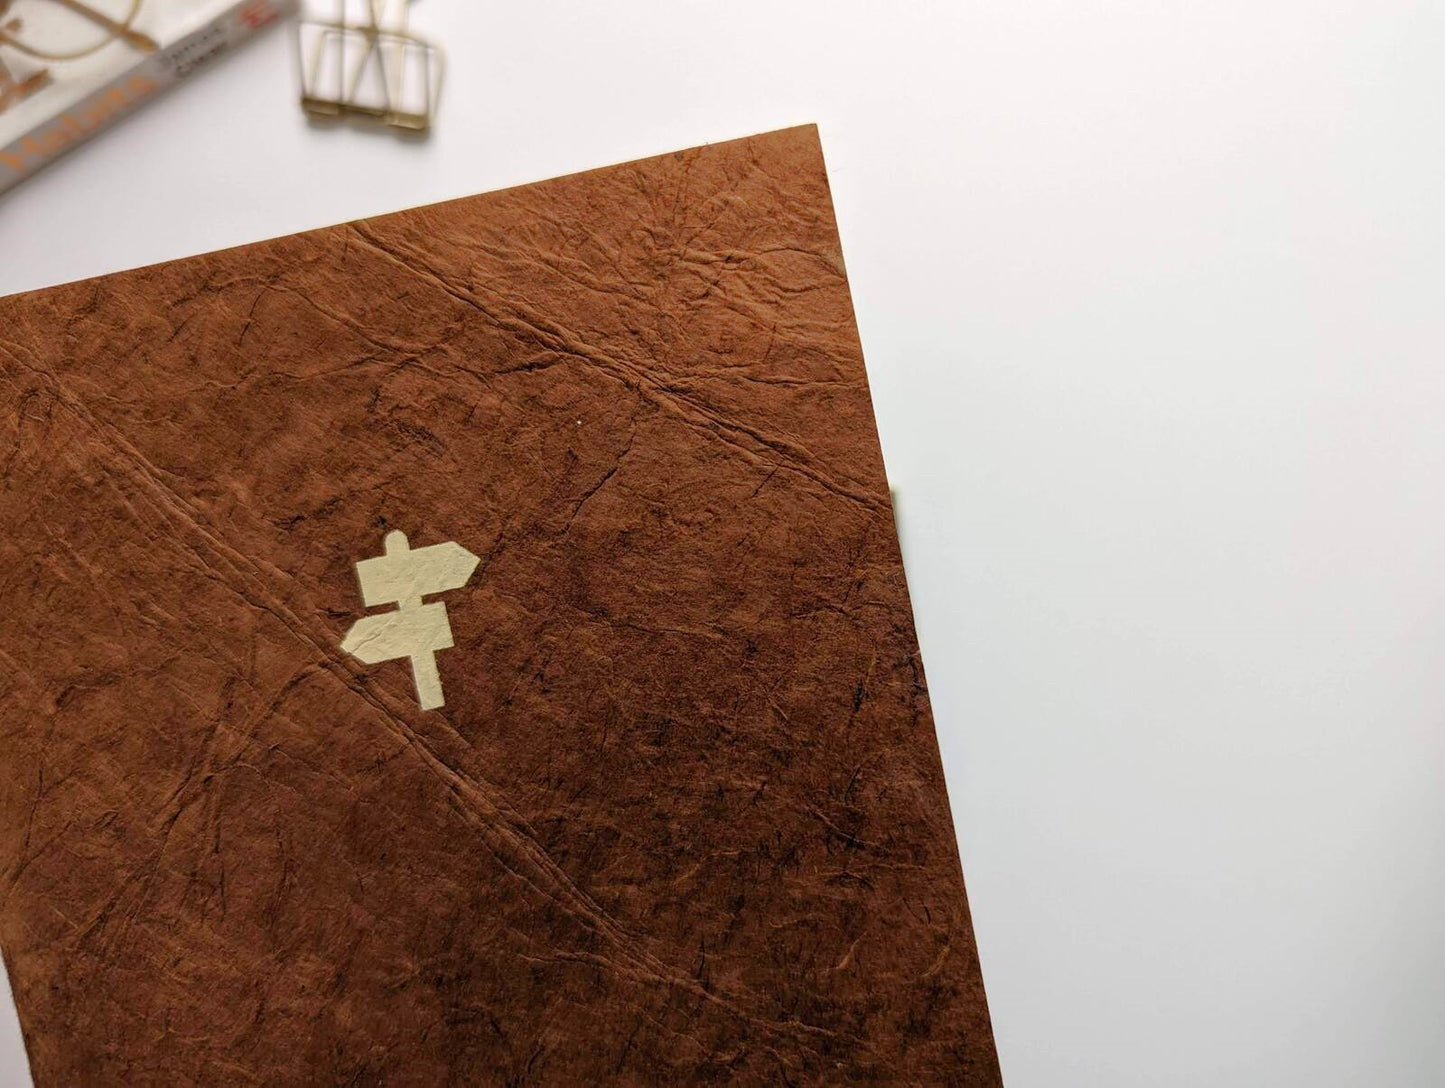 Handmade paper notebook | Katha Goals